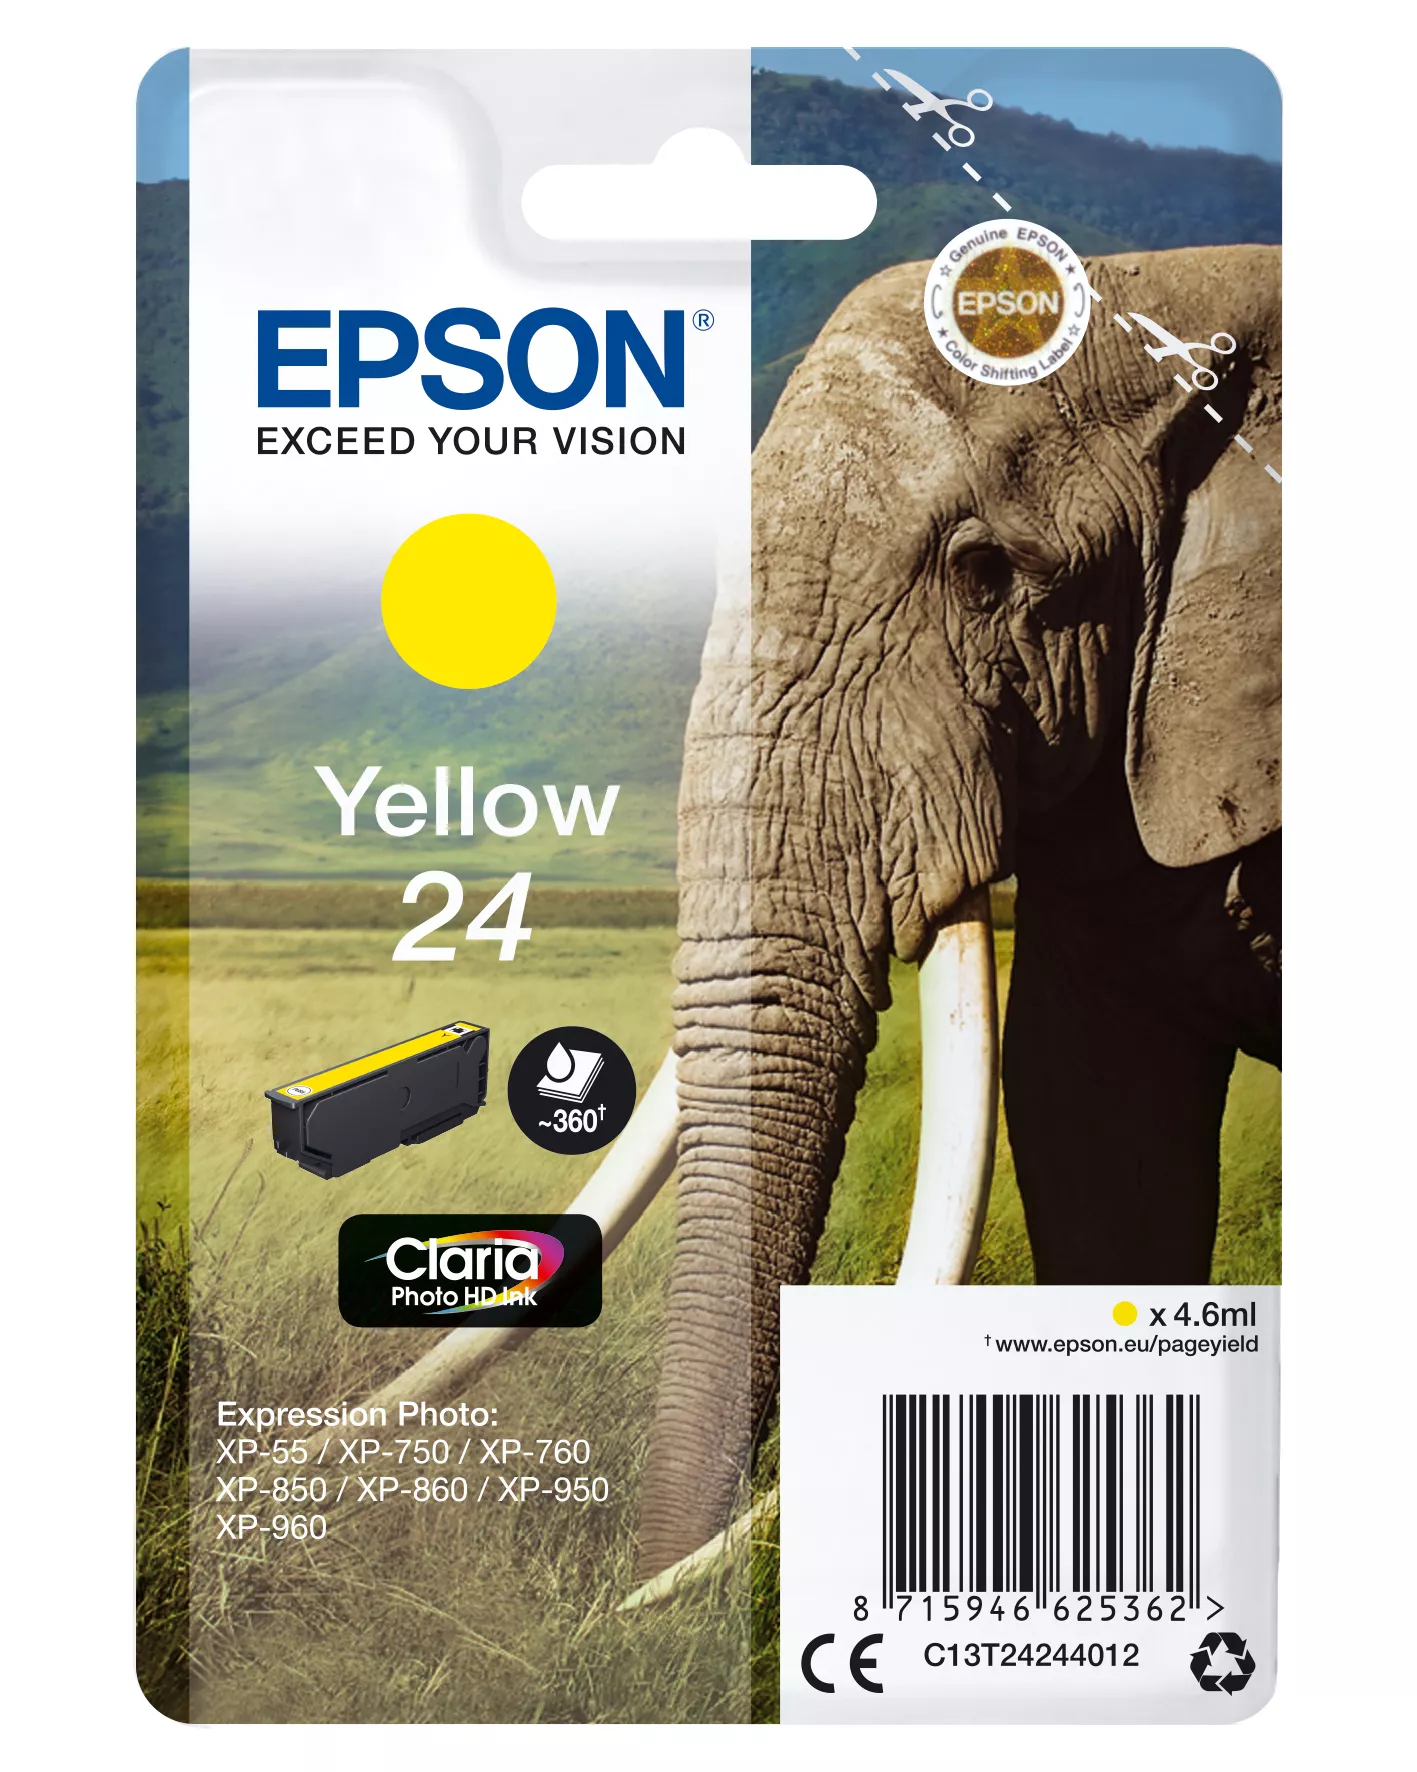 Vente EPSON 24 cartouche d encre jaune capacité standard 4.6ml au meilleur prix